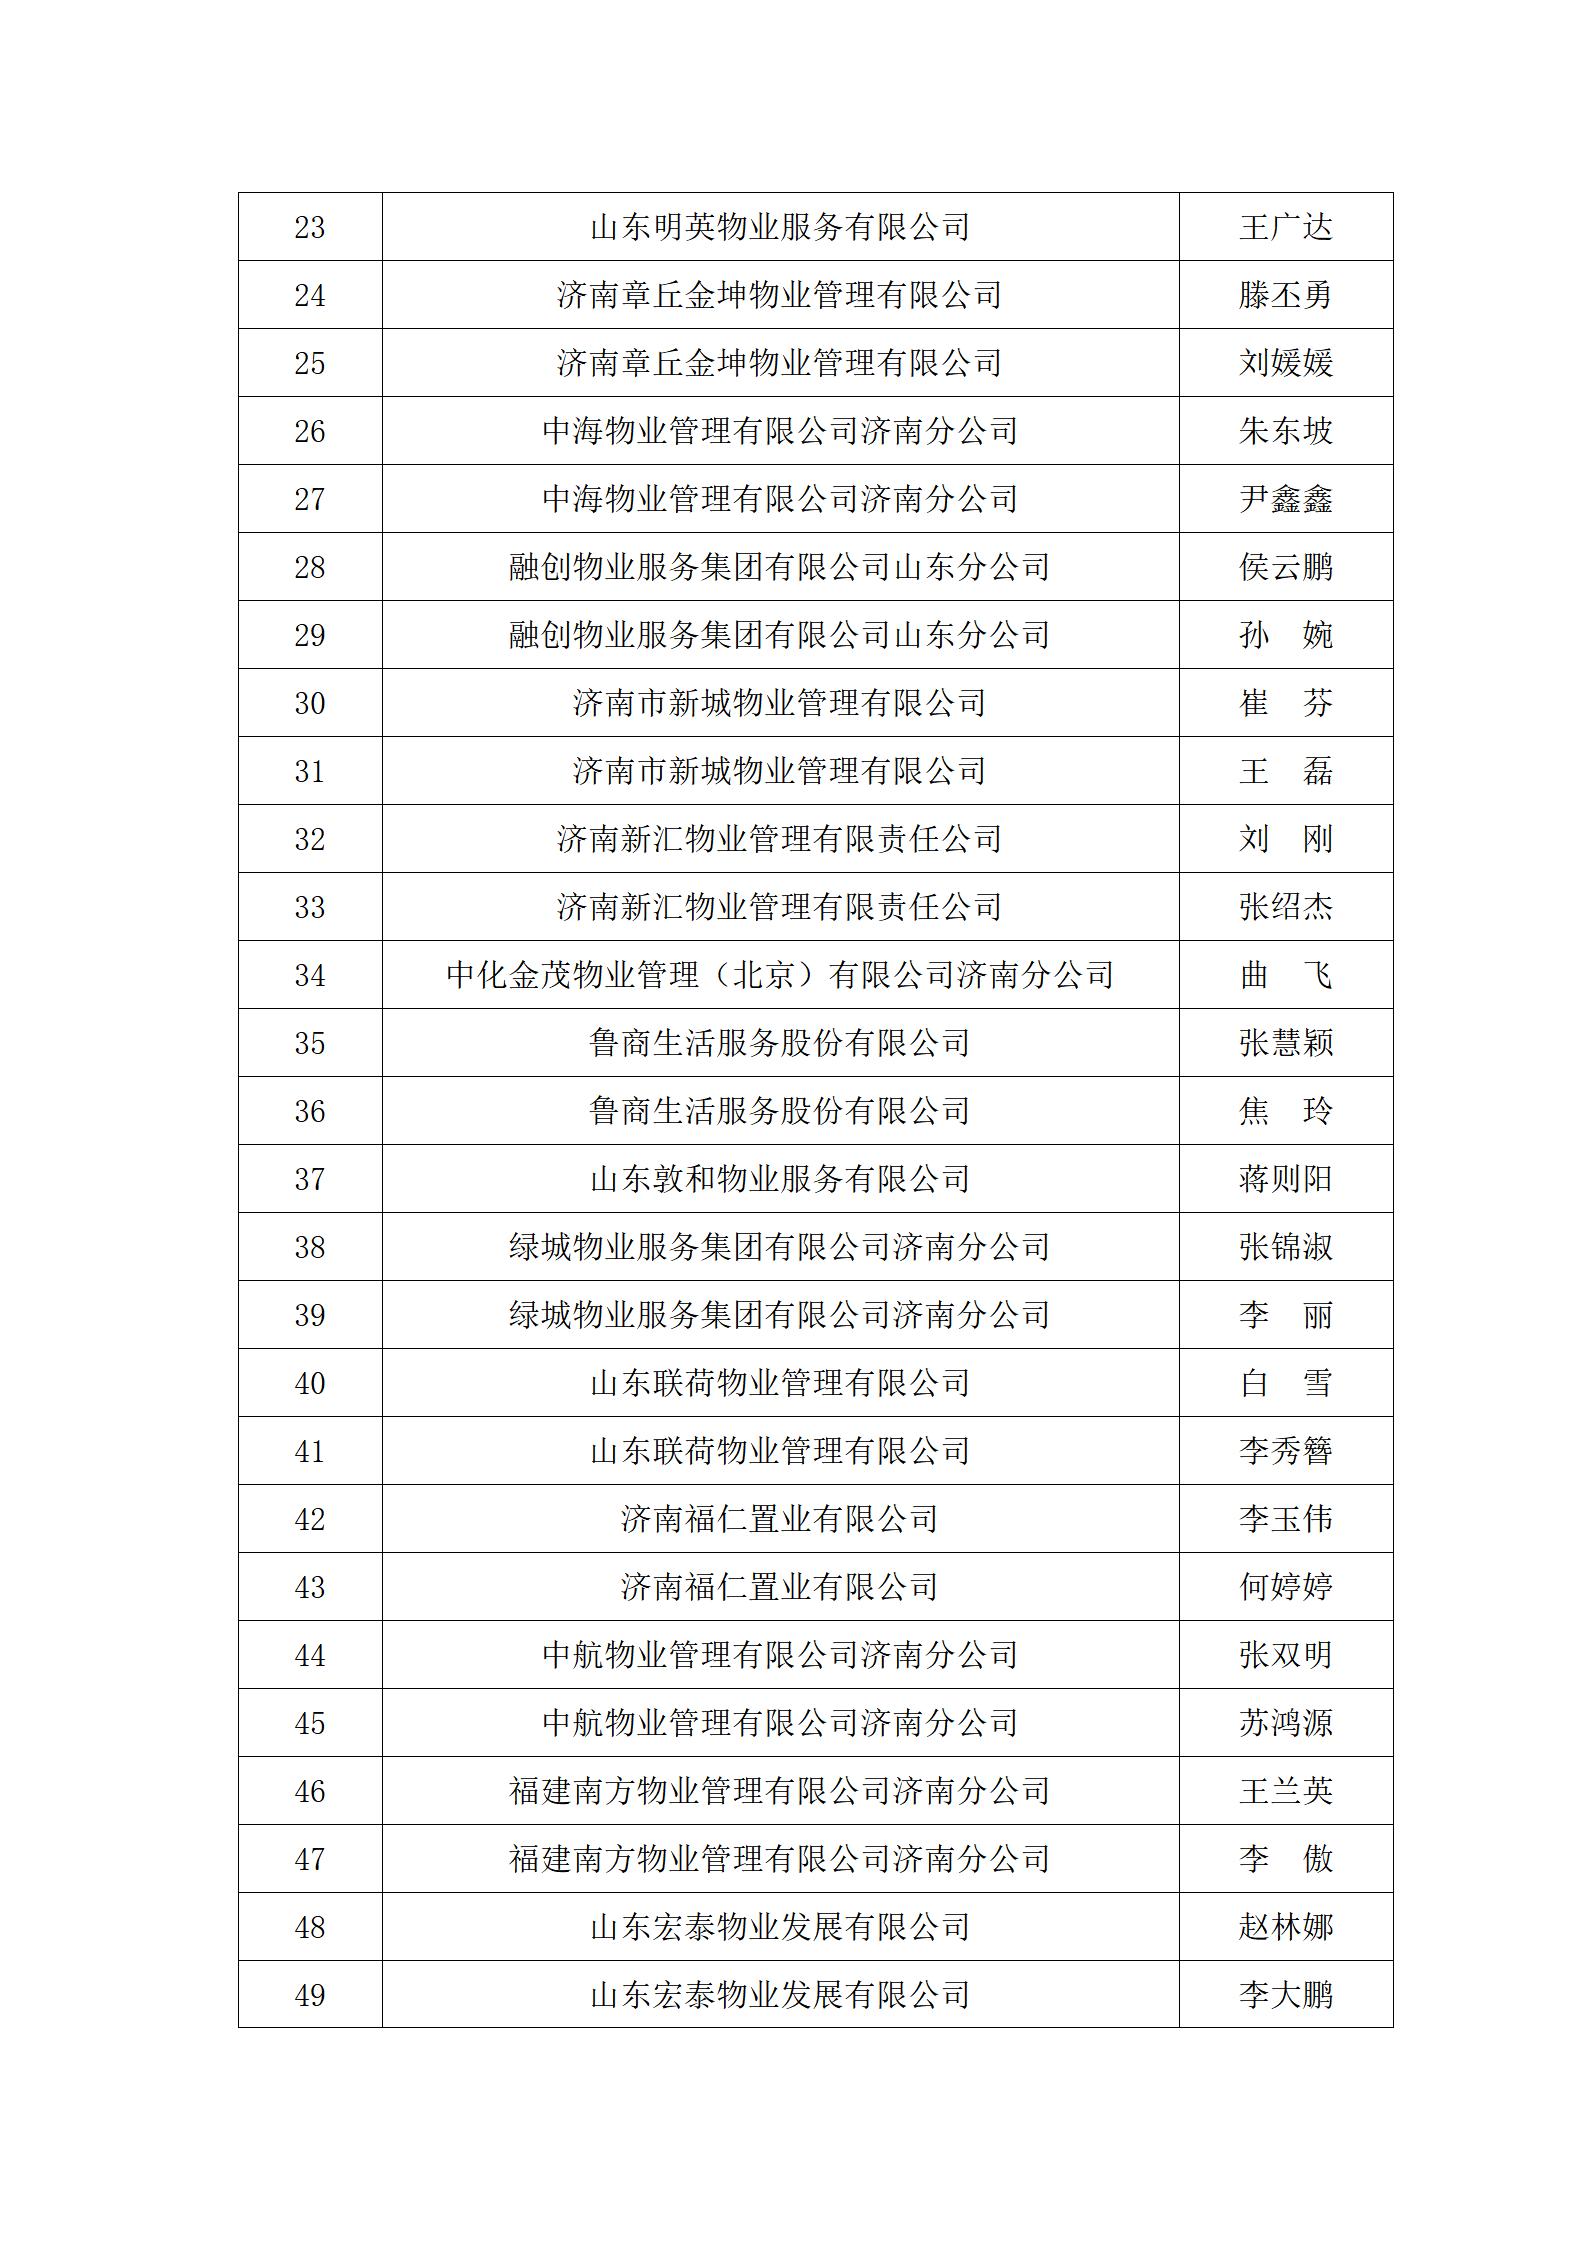 关于“明德杯”第六届济南市物业服务行业职业技能竞赛选手名单的公示_03